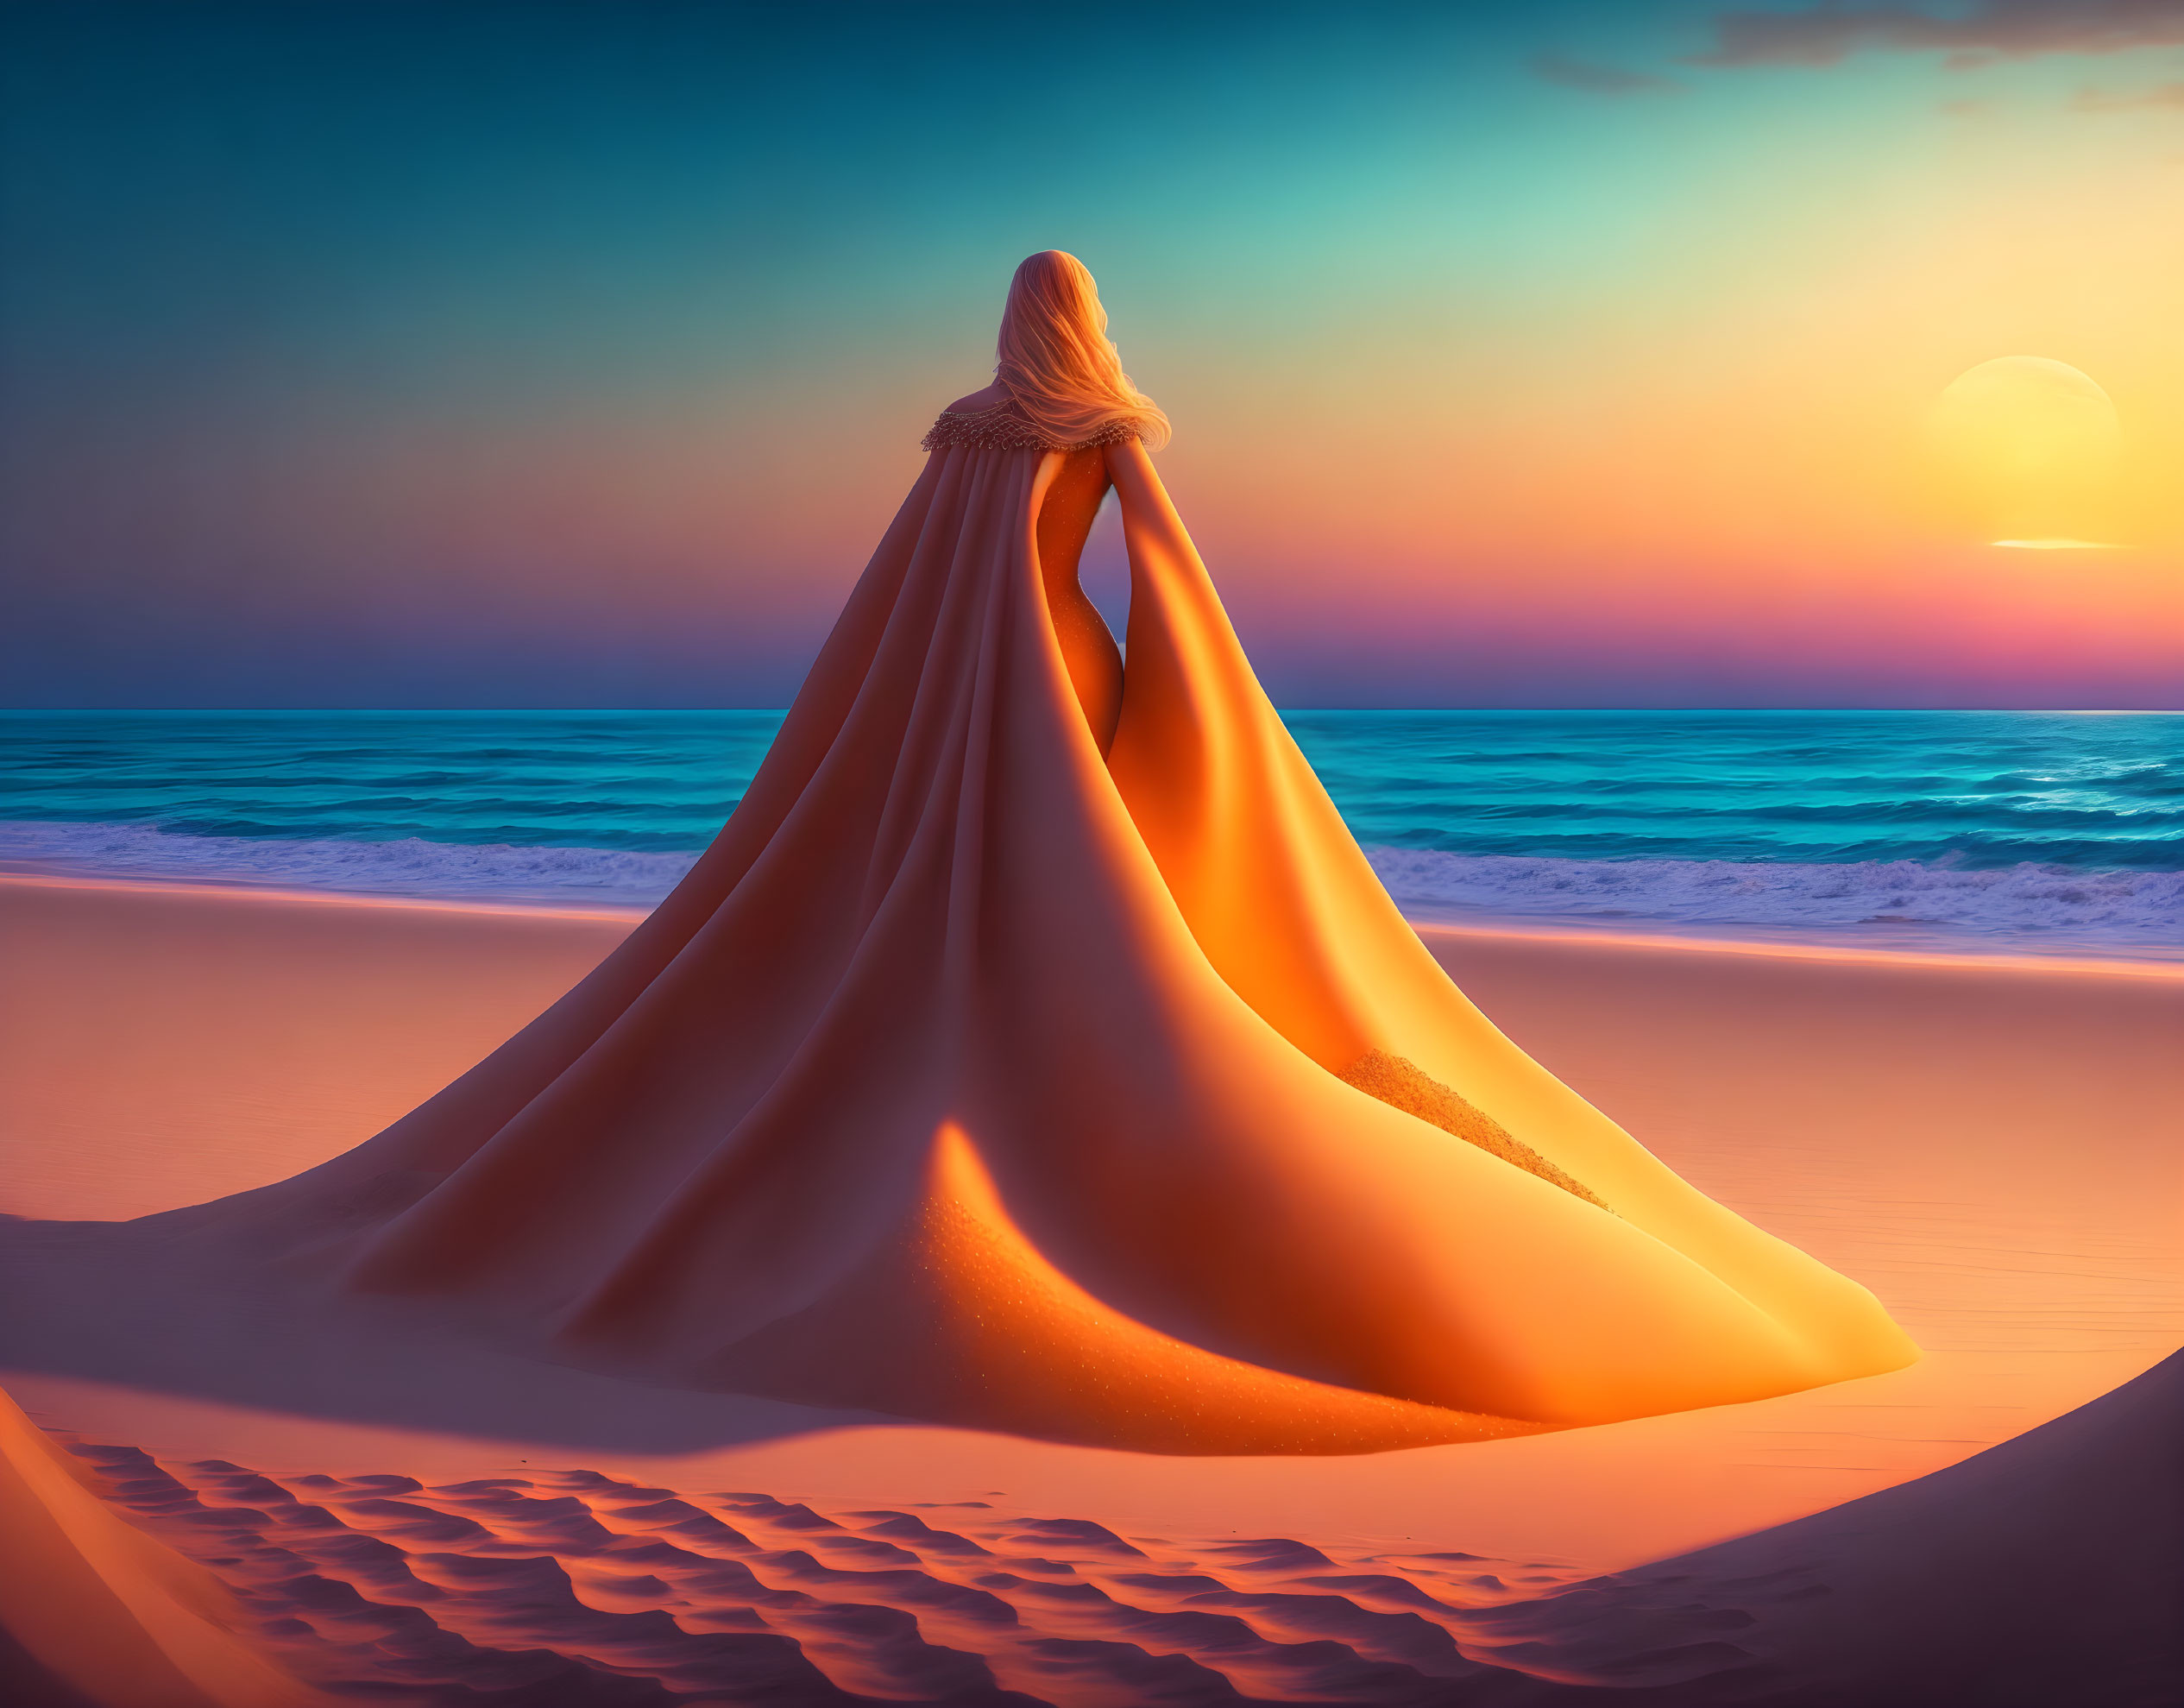 Queen of the Sands